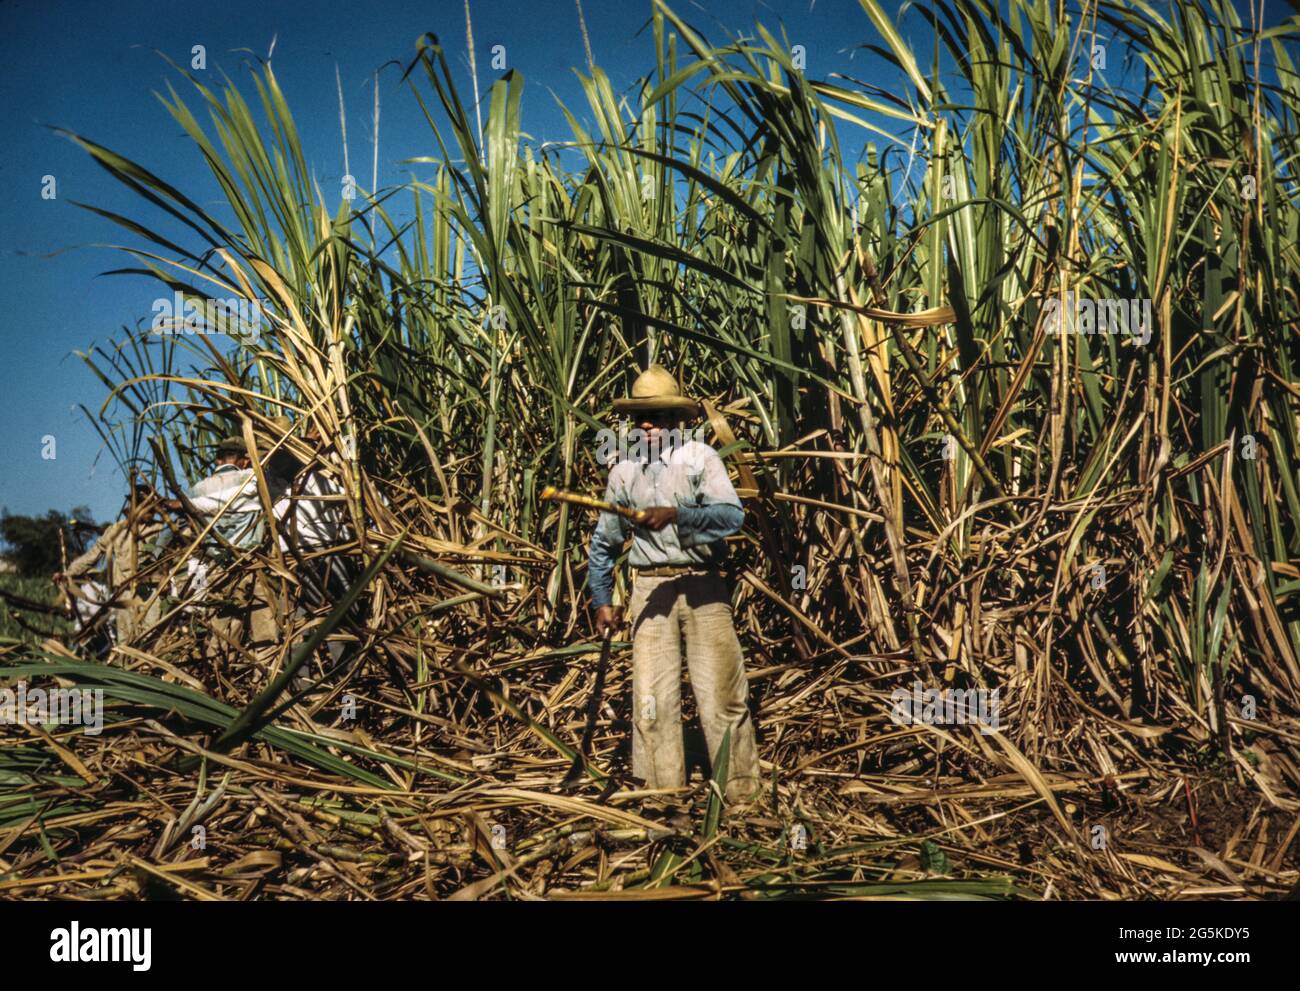 Zuckerrohrarbeiter aus den 40er Jahren ernten im reichen Zuckerrohrfeld in der Nähe von Guanica, Puerto Rico. Jack Delano Fotograf 1942. Jan. WW2 Lebensmittelproduktion - Landarbeiter Zuckerplantagen Ernte Vereinigte Staaten--Puerto Rico--Guanica Stockfoto